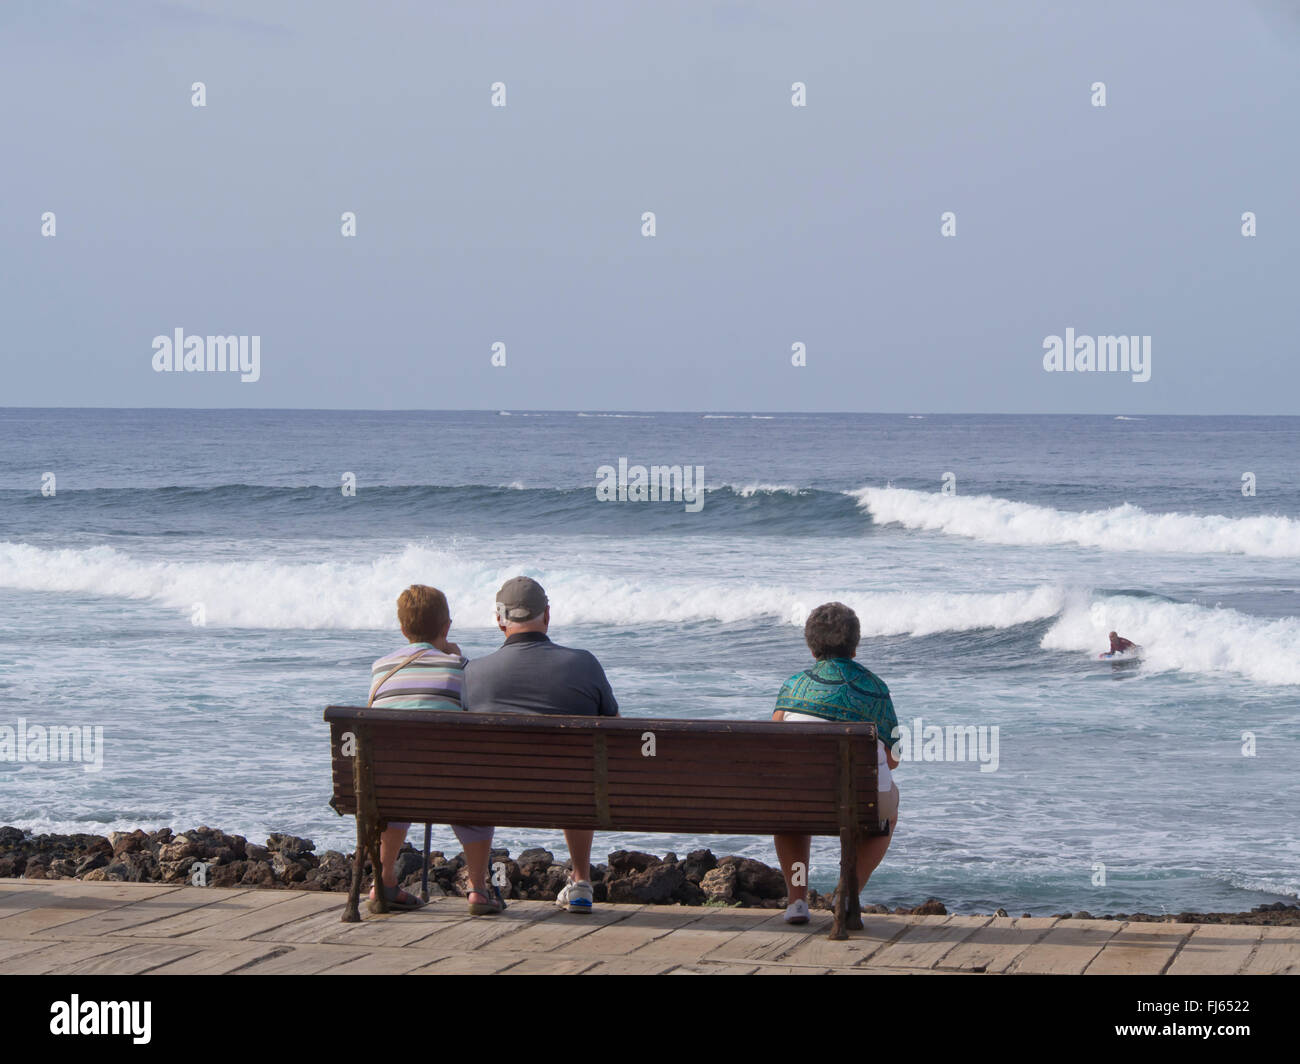 Tres ciudadanos de la tercera edad en un banco del paseo costero en Playa de las Americas Tenerife, mirando hacia el mar y las olas con surfer Foto de stock